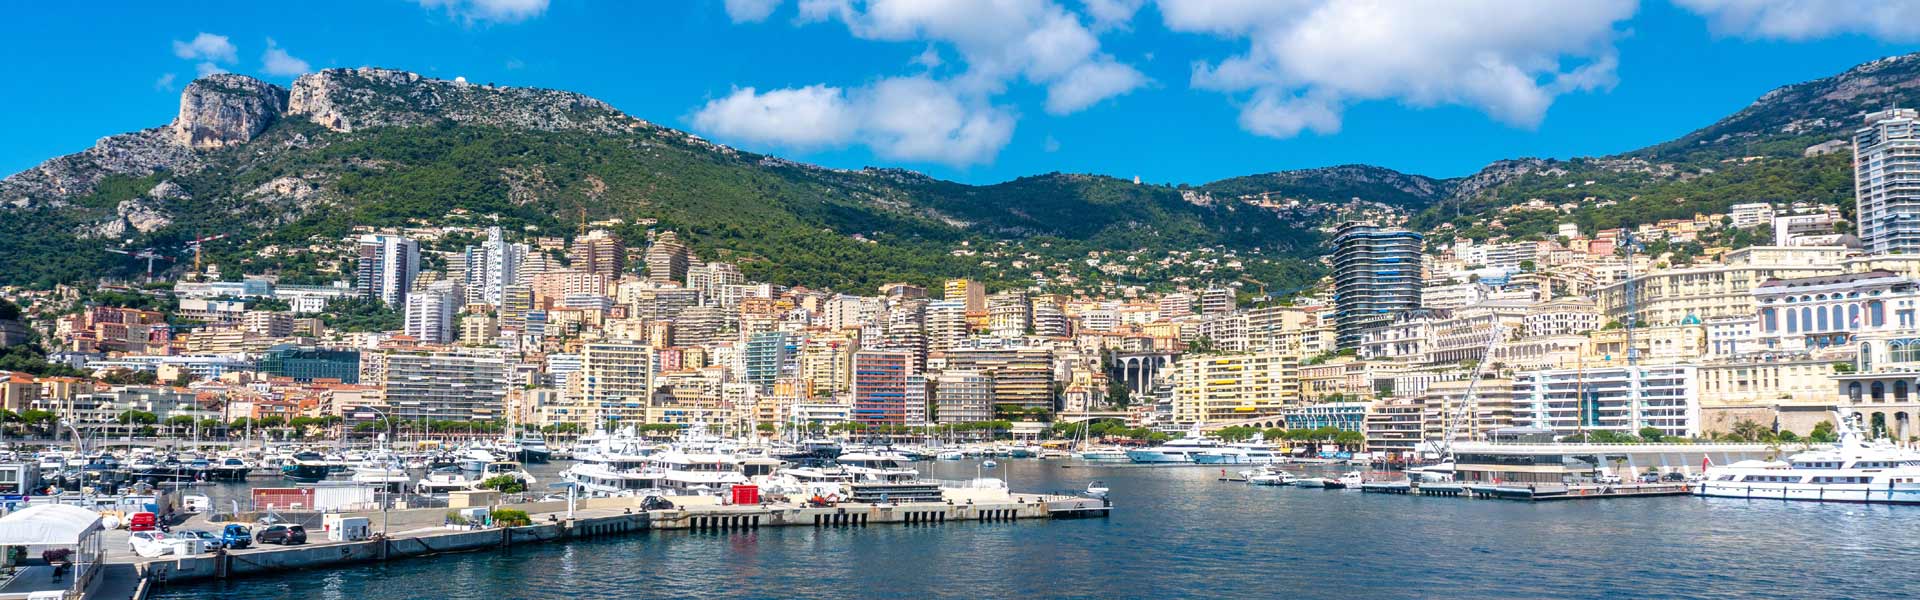 Roadtrip durch die Schweiz und Frankreich mit SUP Monaco